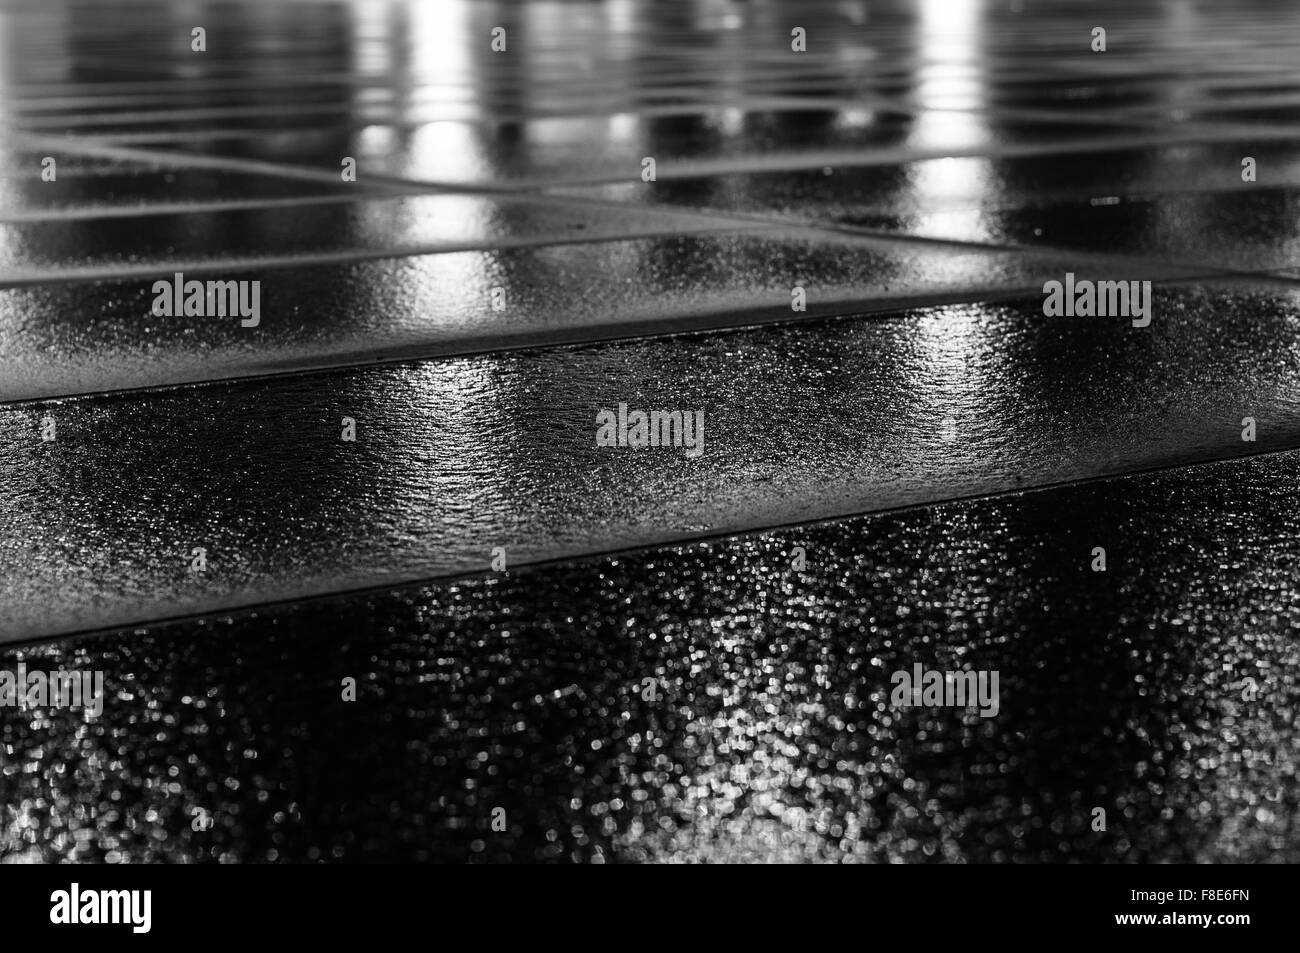 Nacht Lichtreflexion auf nassen Platte nach Regen zu ebnen. Schwarz / weiß Bild mit Tiefenschärfe Stockfoto